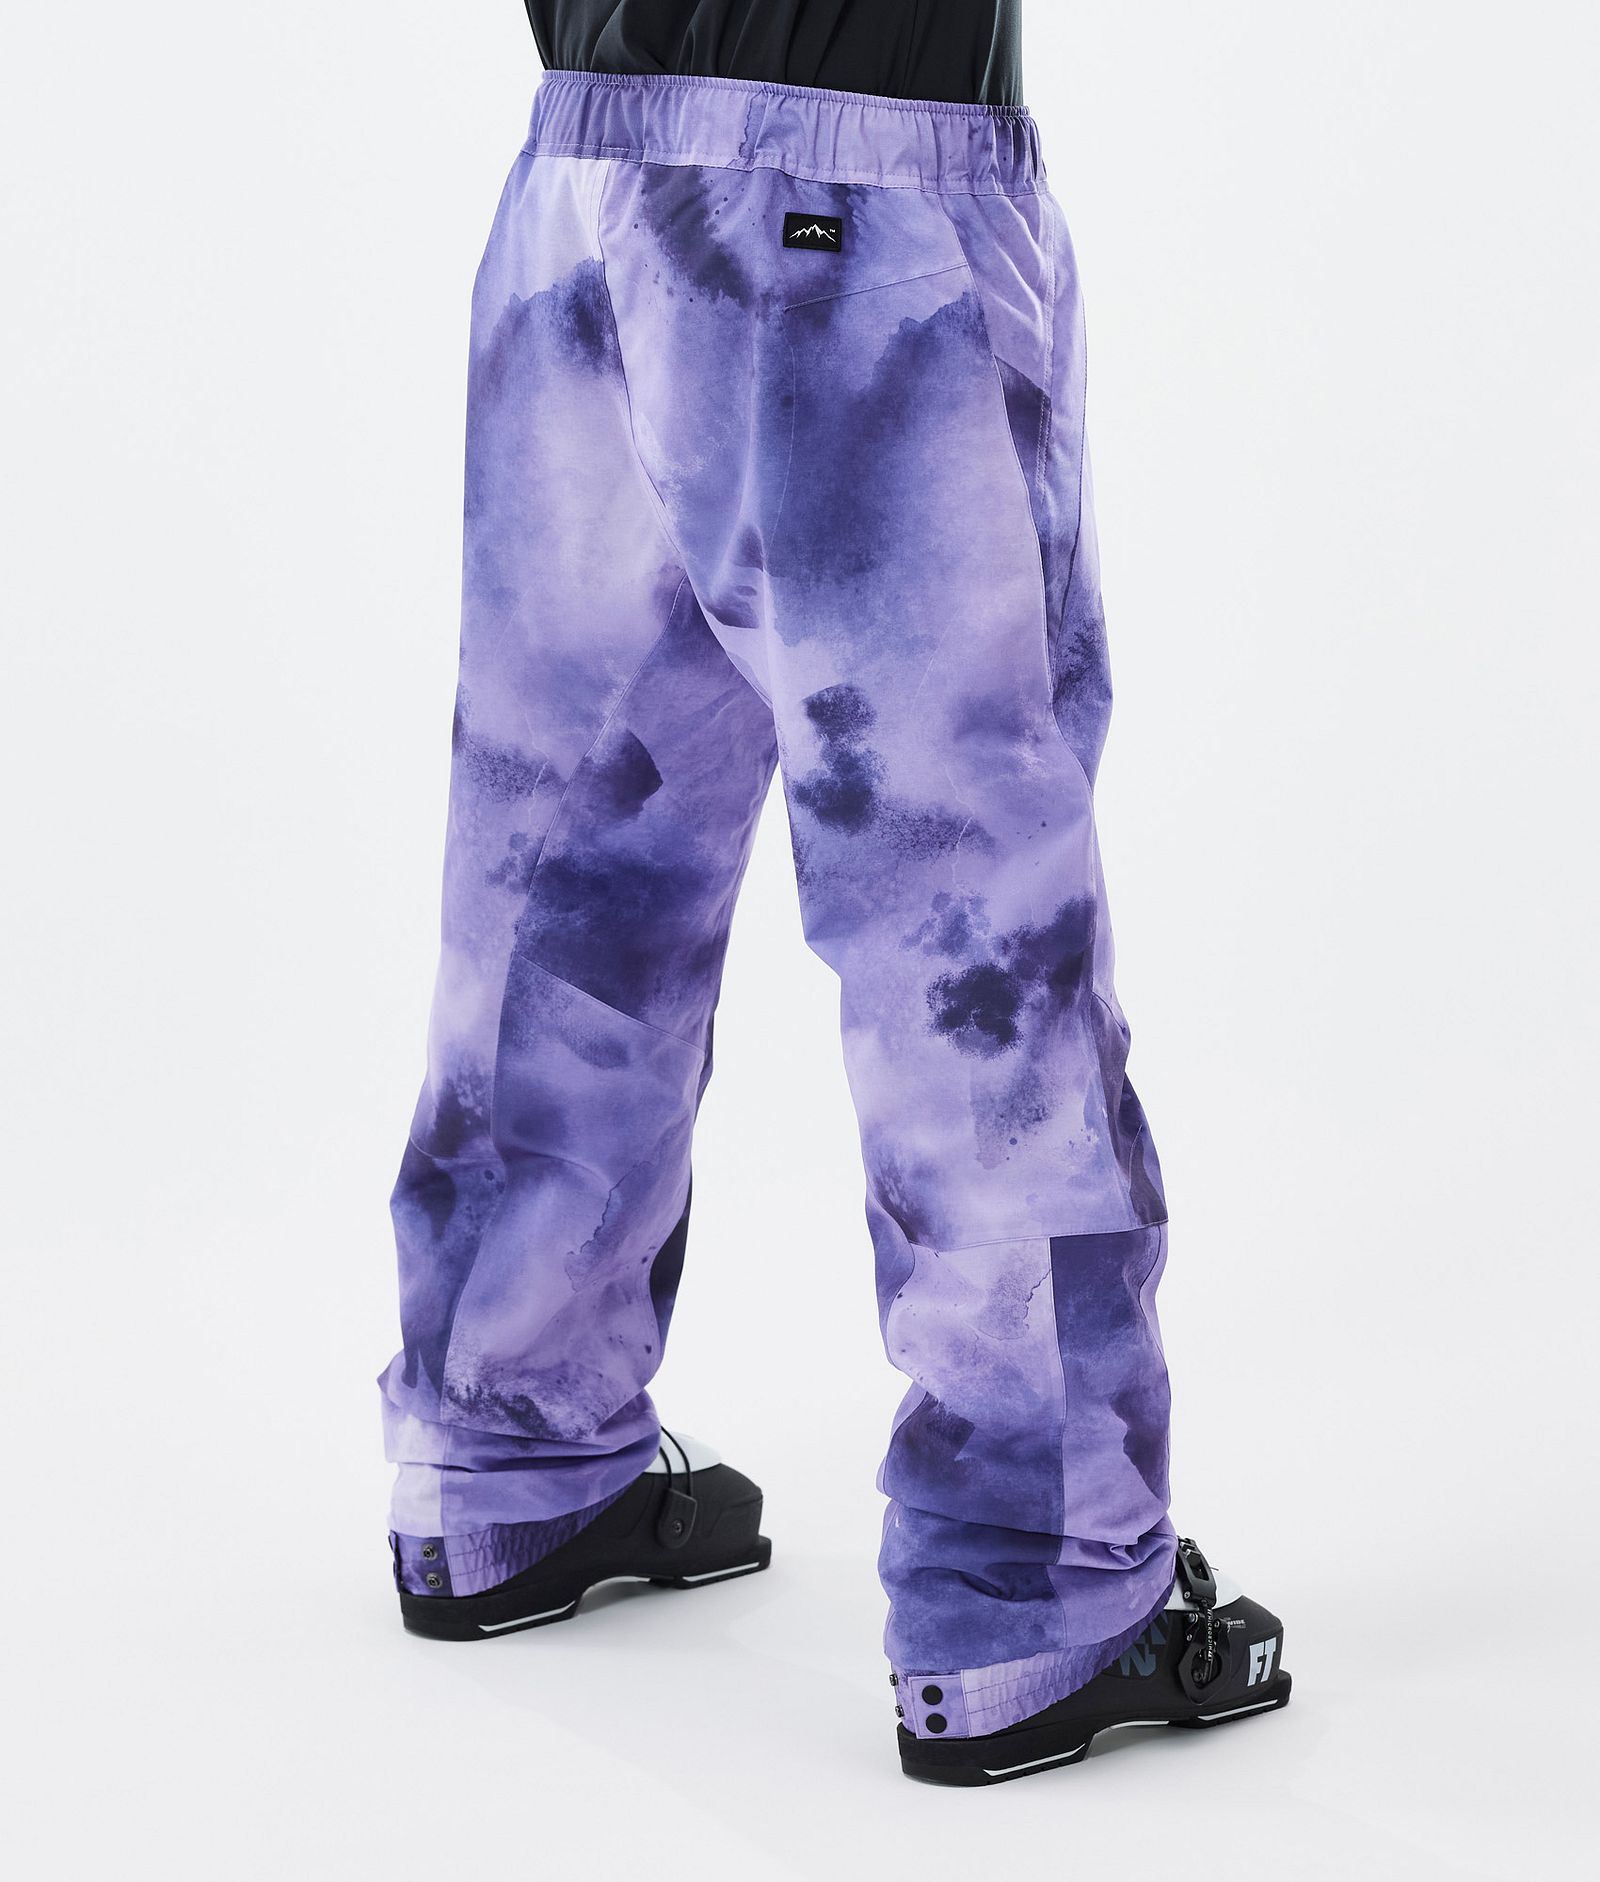 Blizzard Pantaloni Sci Uomo Liquid Violet, Immagine 4 di 5